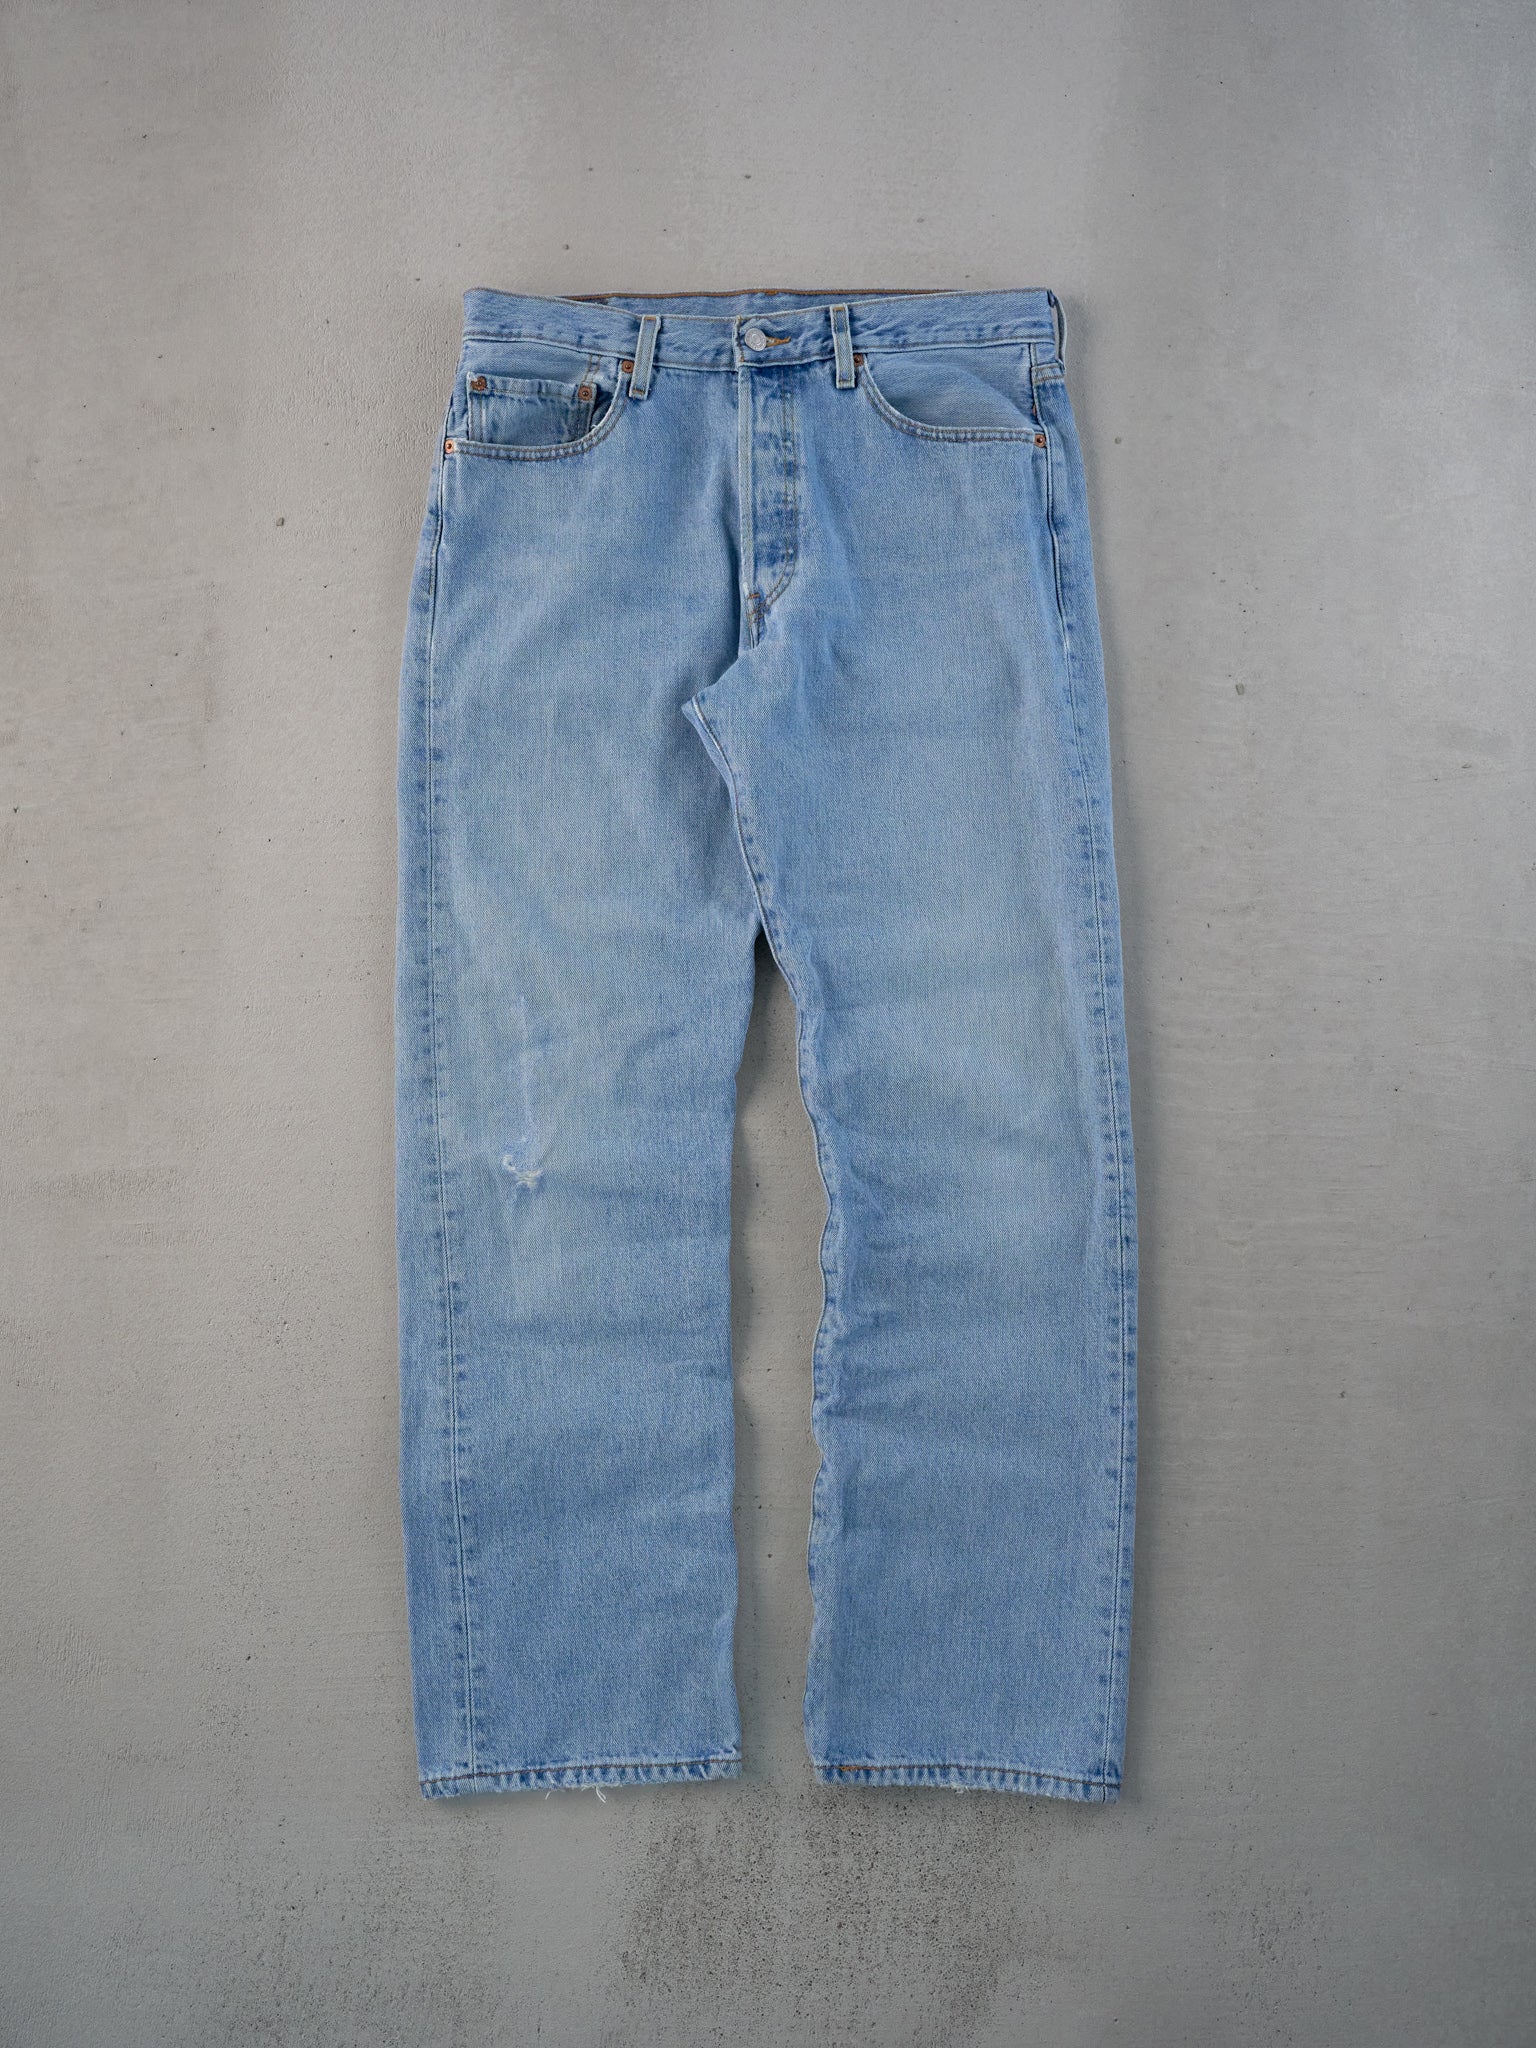 Vintage 90s Blue Levi's 501 Denim Jeans (33x31)